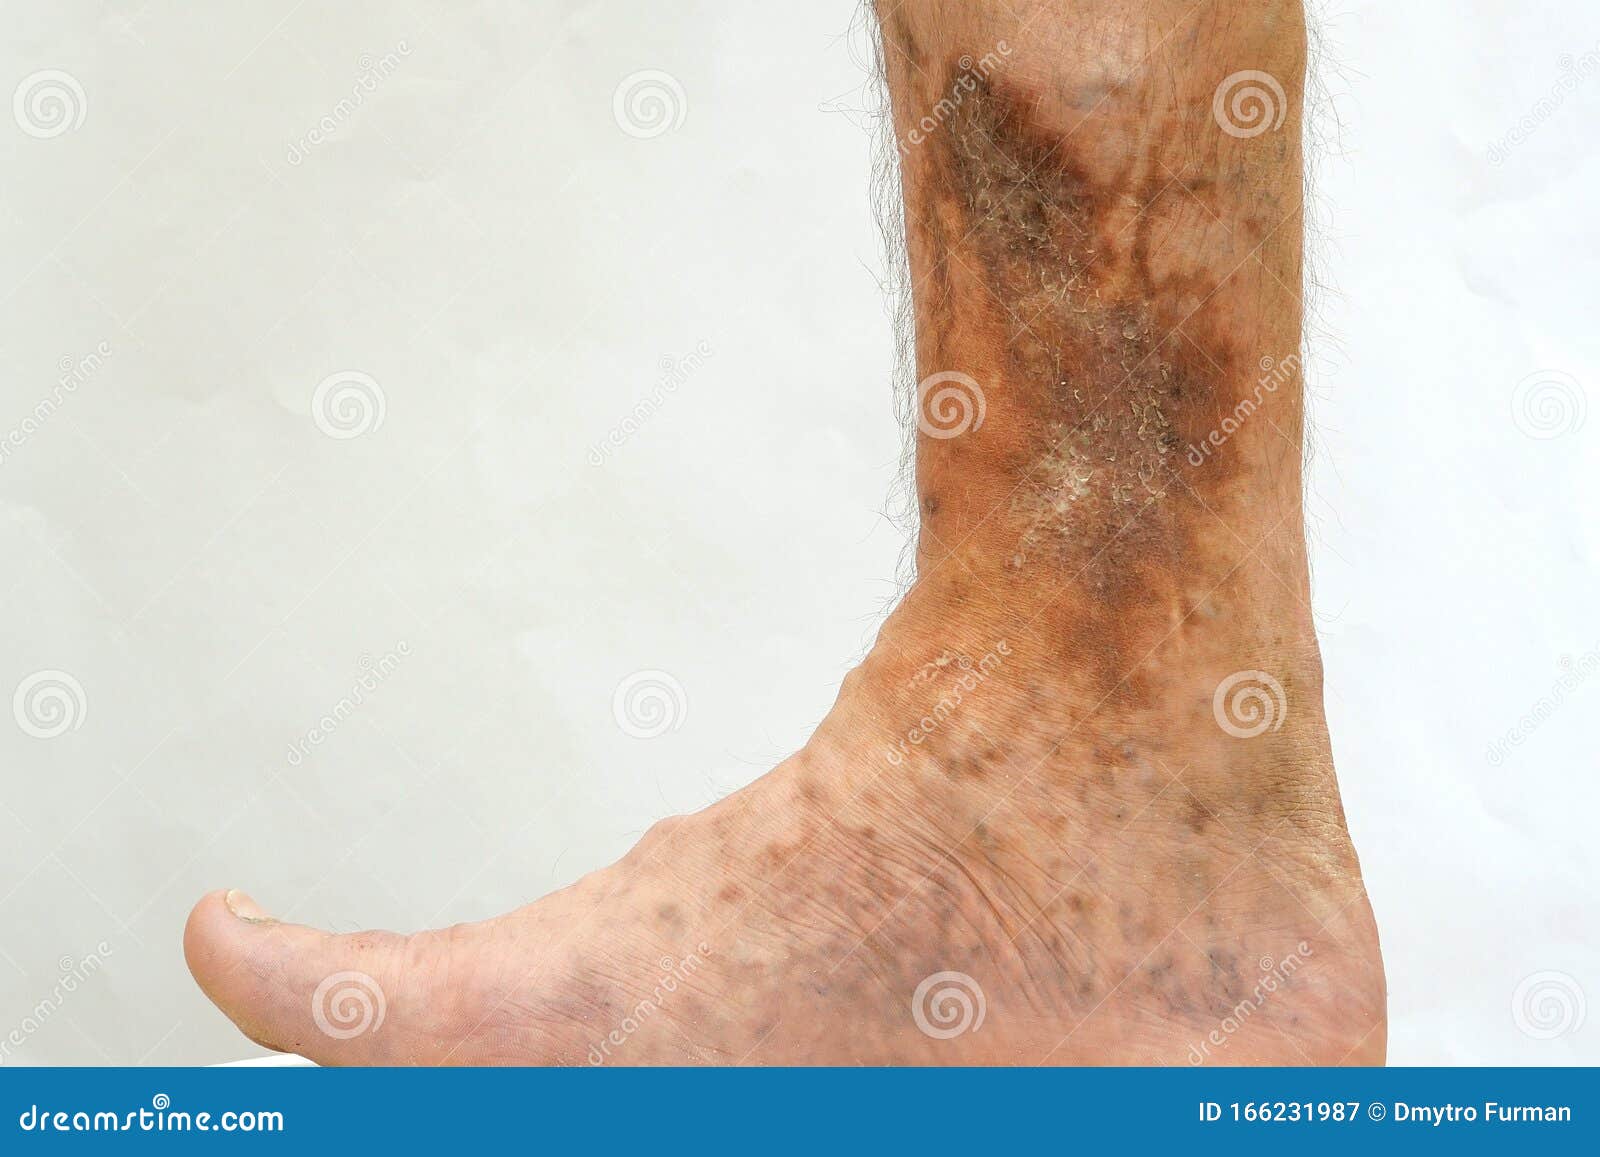 Mensch hautkrankheiten Haut: Warum